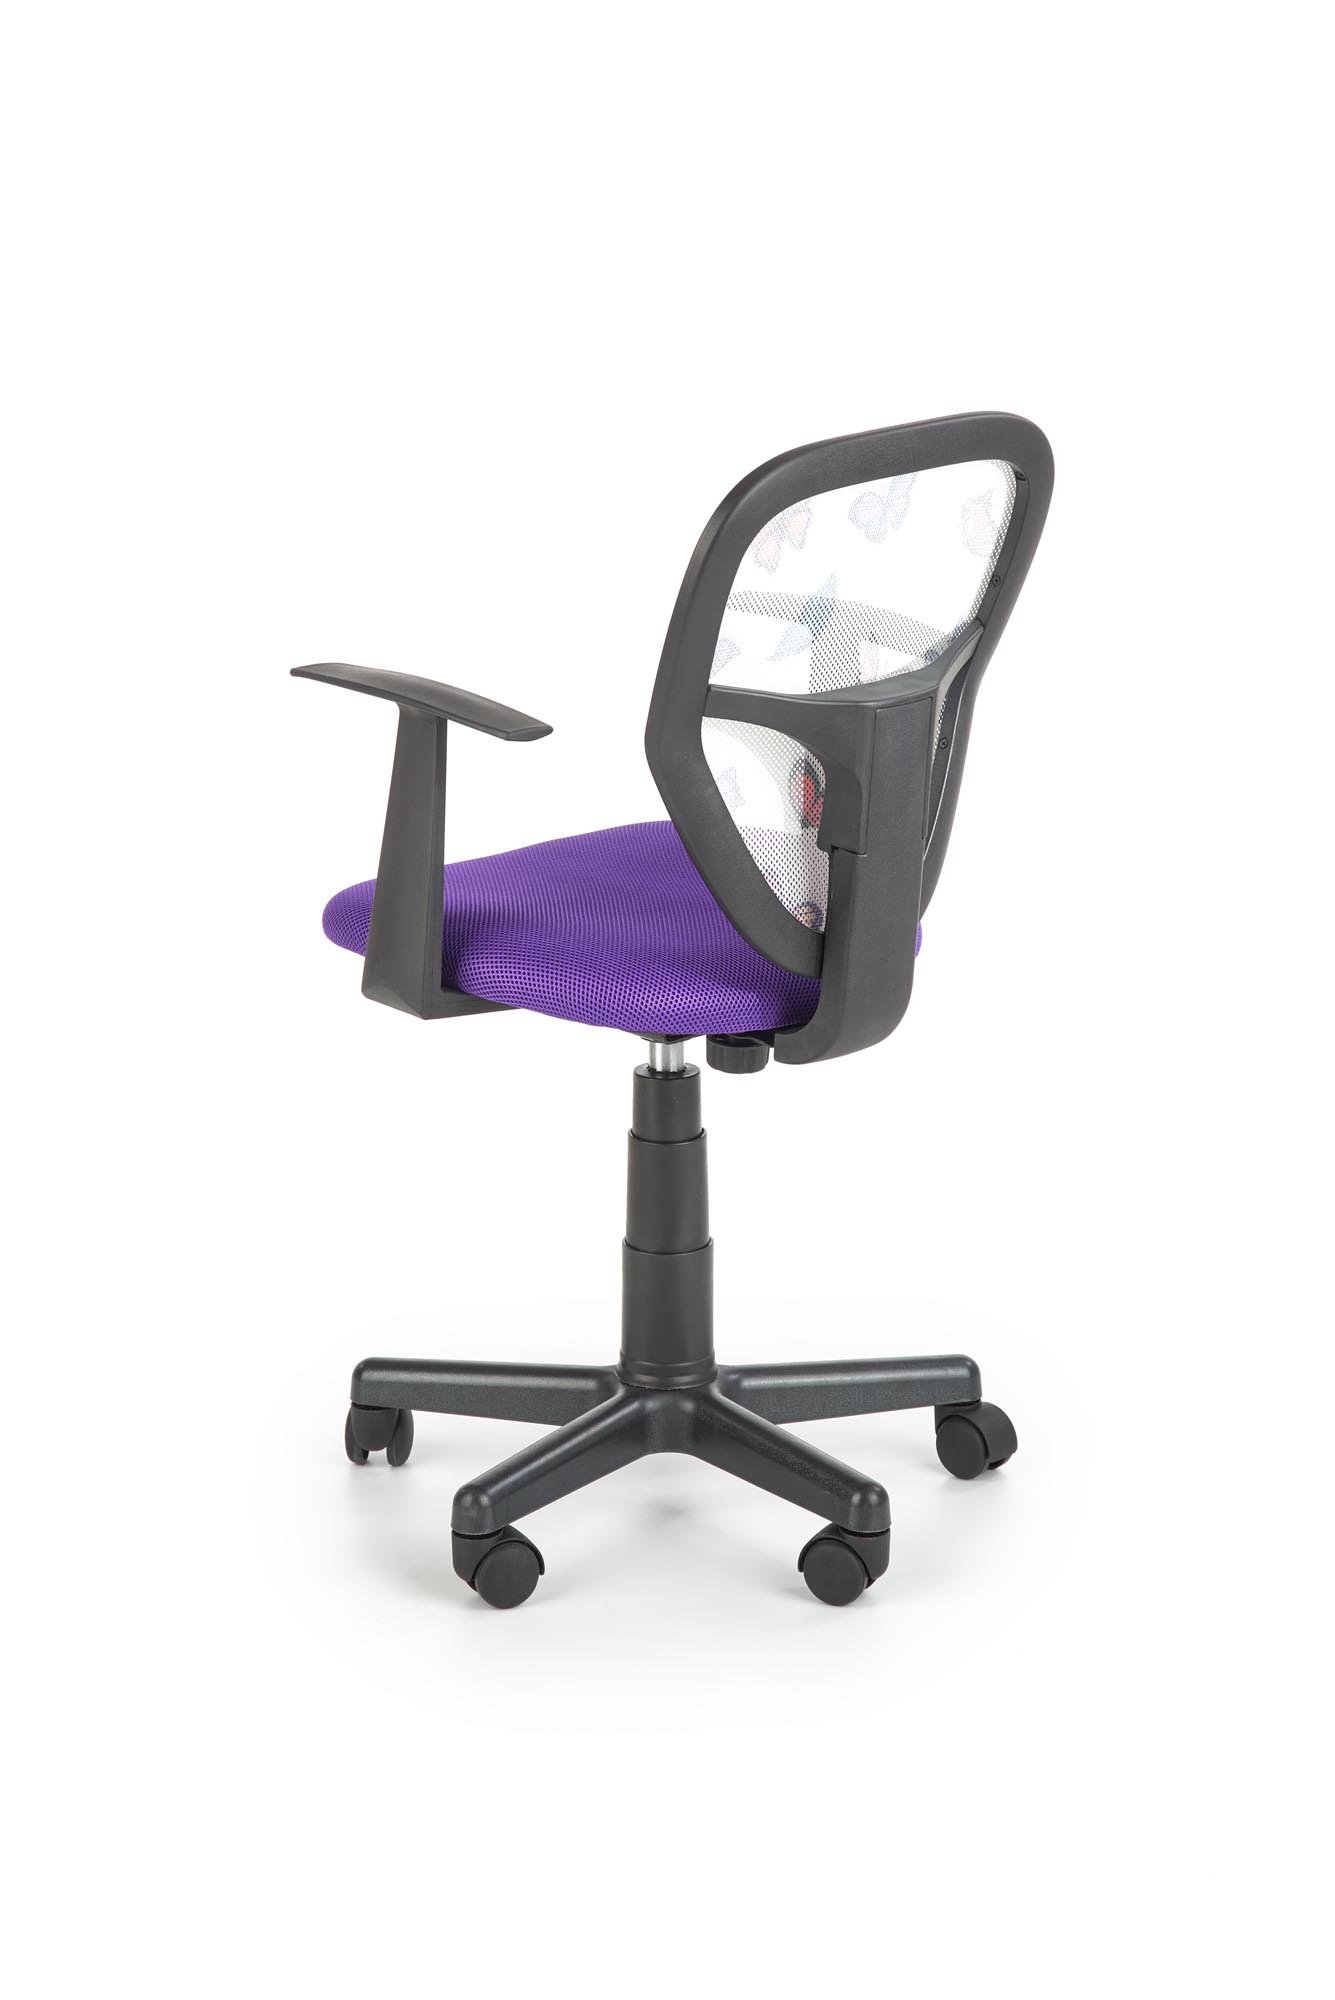 Vaikiška kėdė SPIKER, violetinė - 5